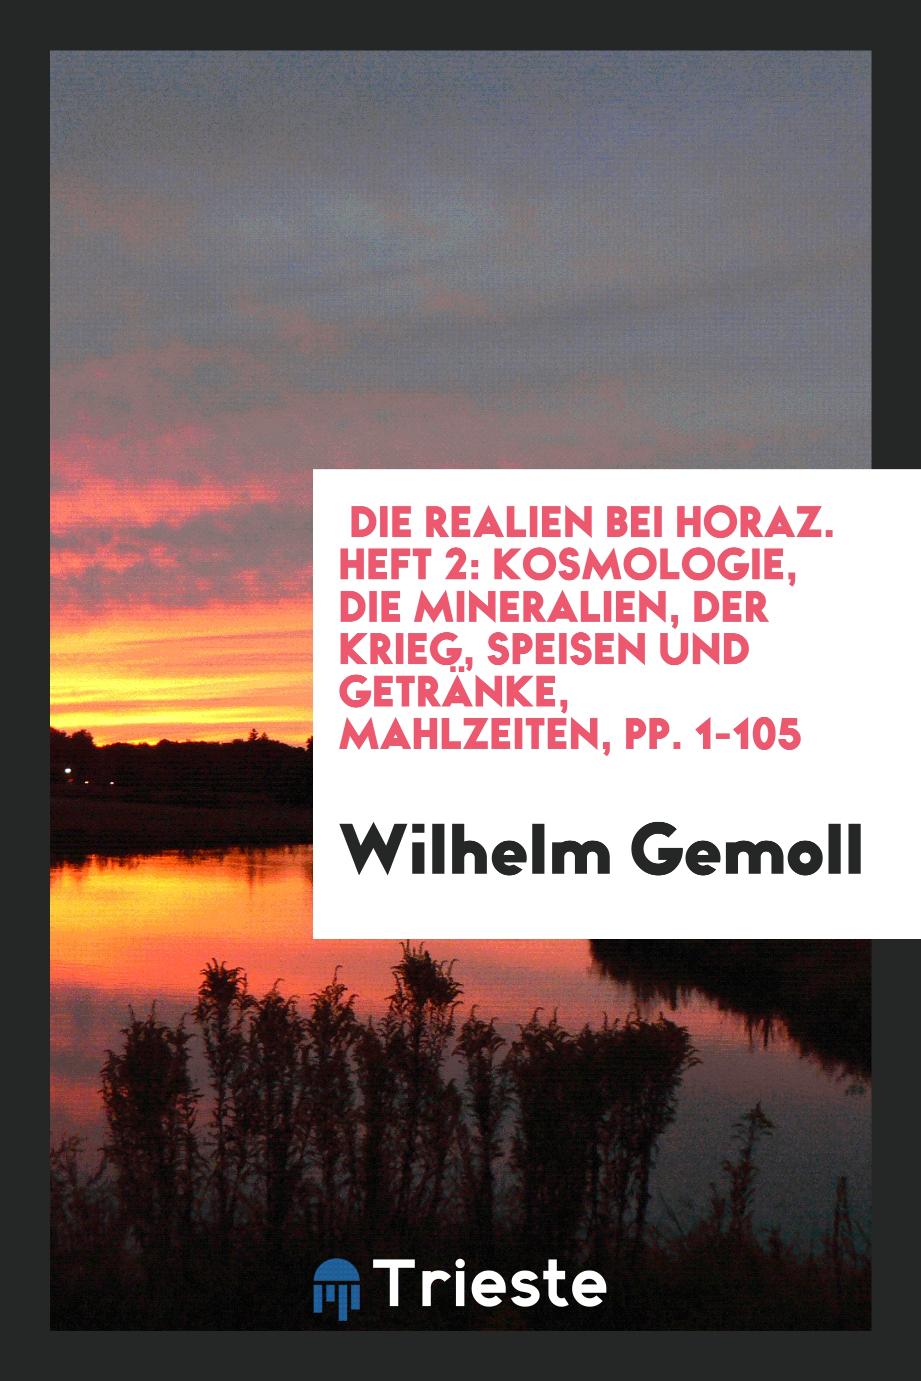 Die Realien Bei Horaz. Heft 2: Kosmologie, Die Mineralien, Der Krieg, Speisen und Getränke, Mahlzeiten, pp. 1-105